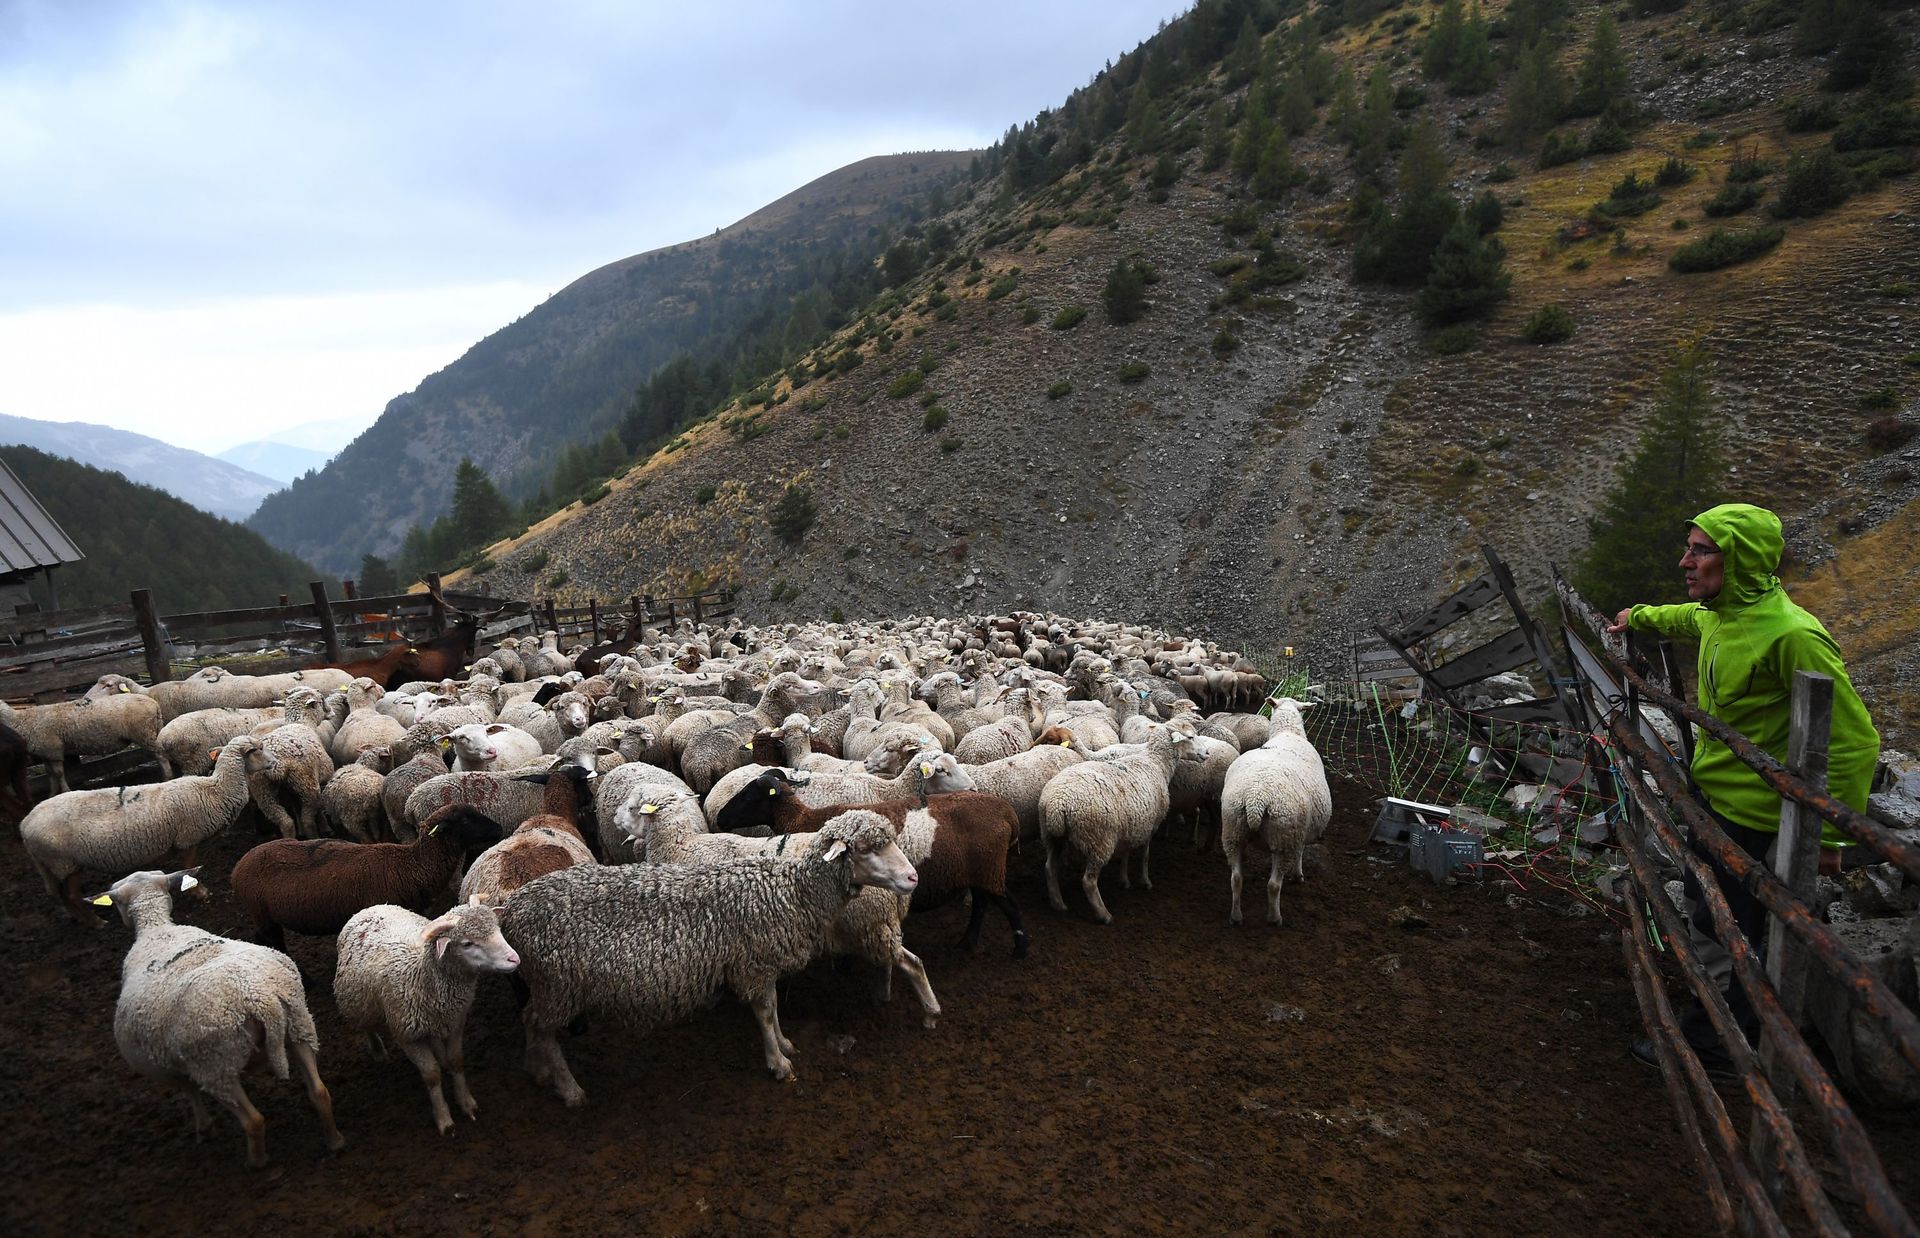 Un berger protège son troupeau des prédateurs, dans les Alpes françaises (27/09/17)